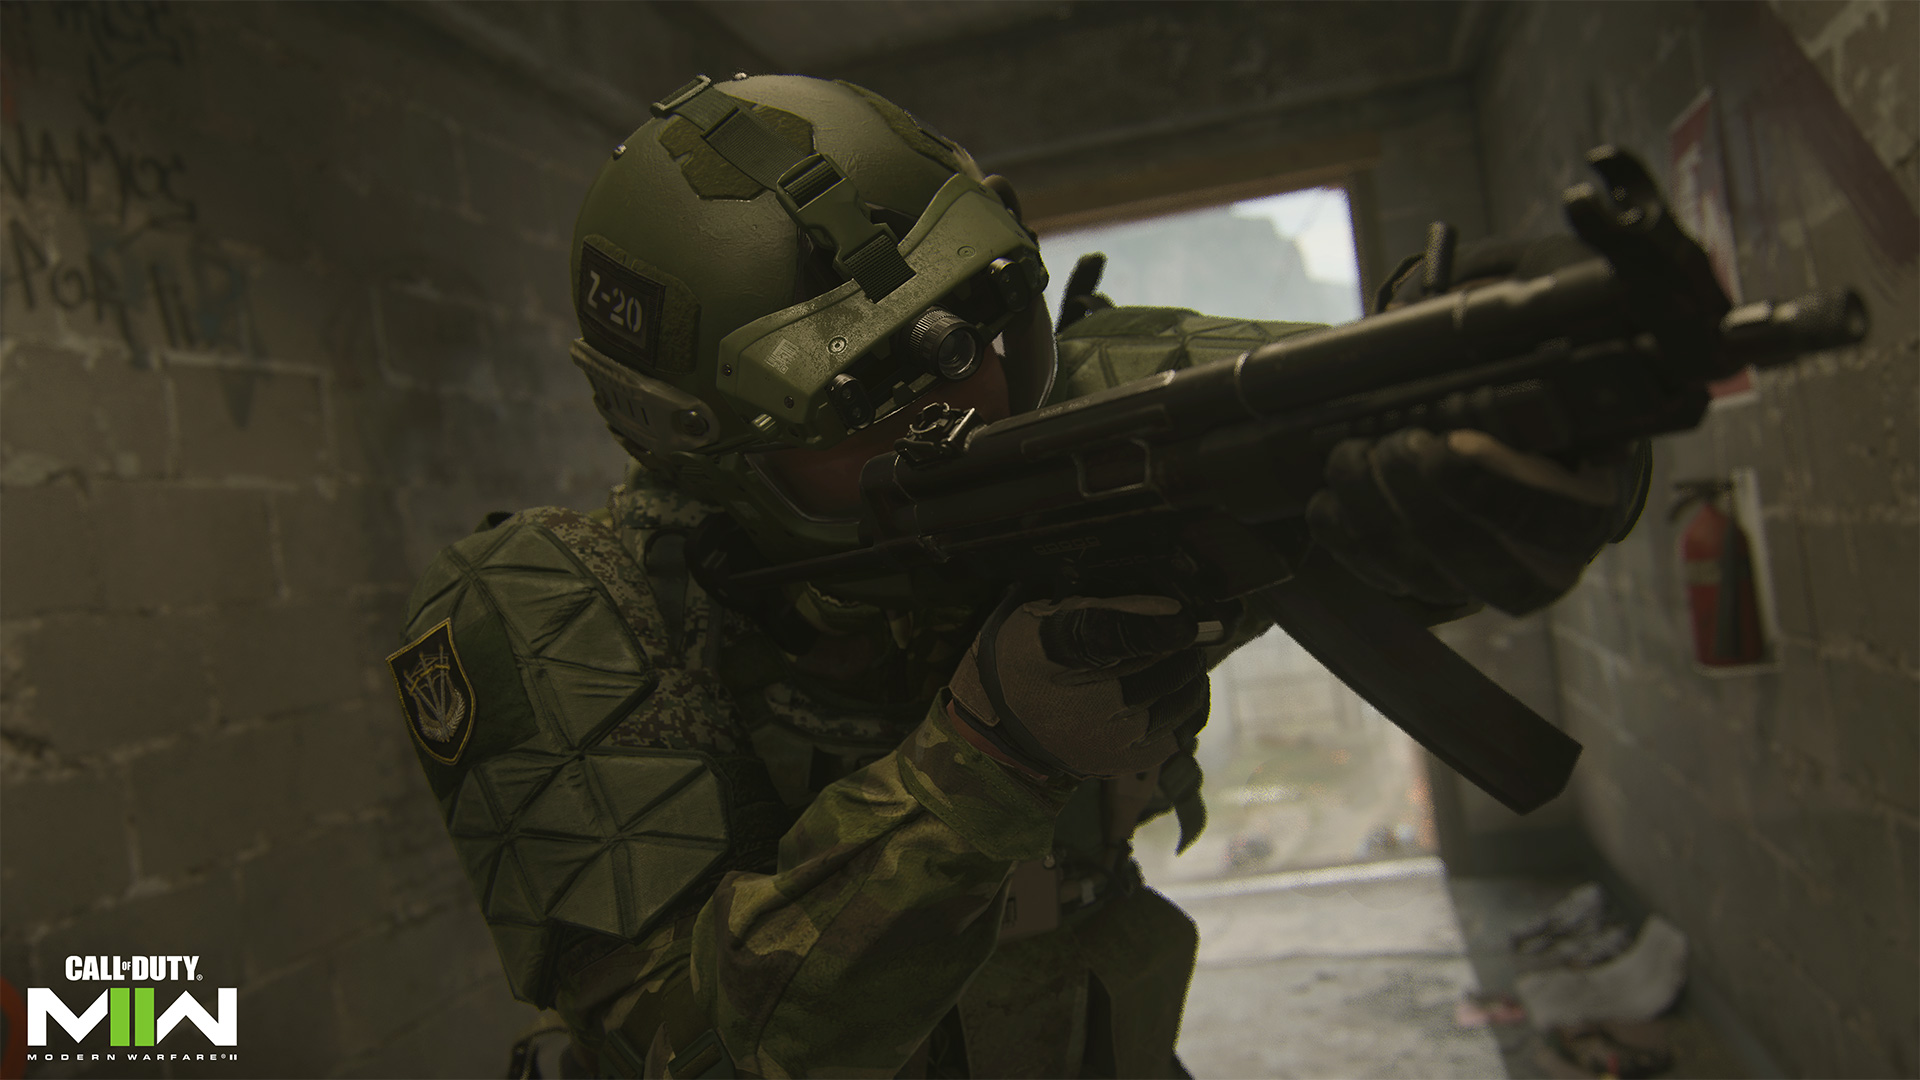 Call of Duty Modern Warfare 2: como progredir e completar todas as missões  da 1ª temporada